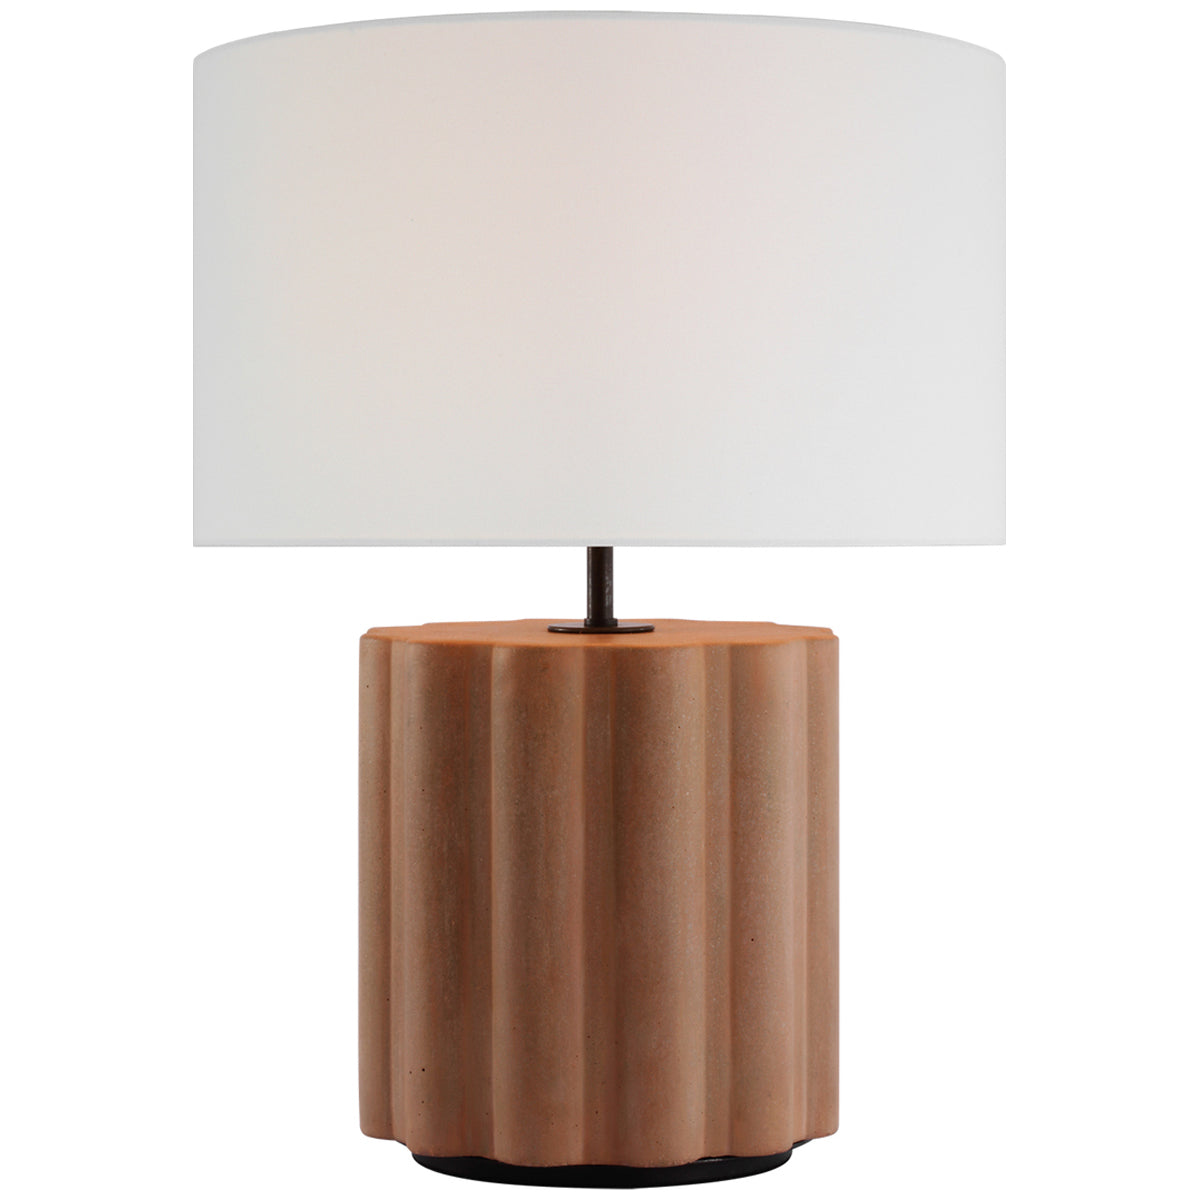 Visual Comfort Scioto Medium Table Lamp